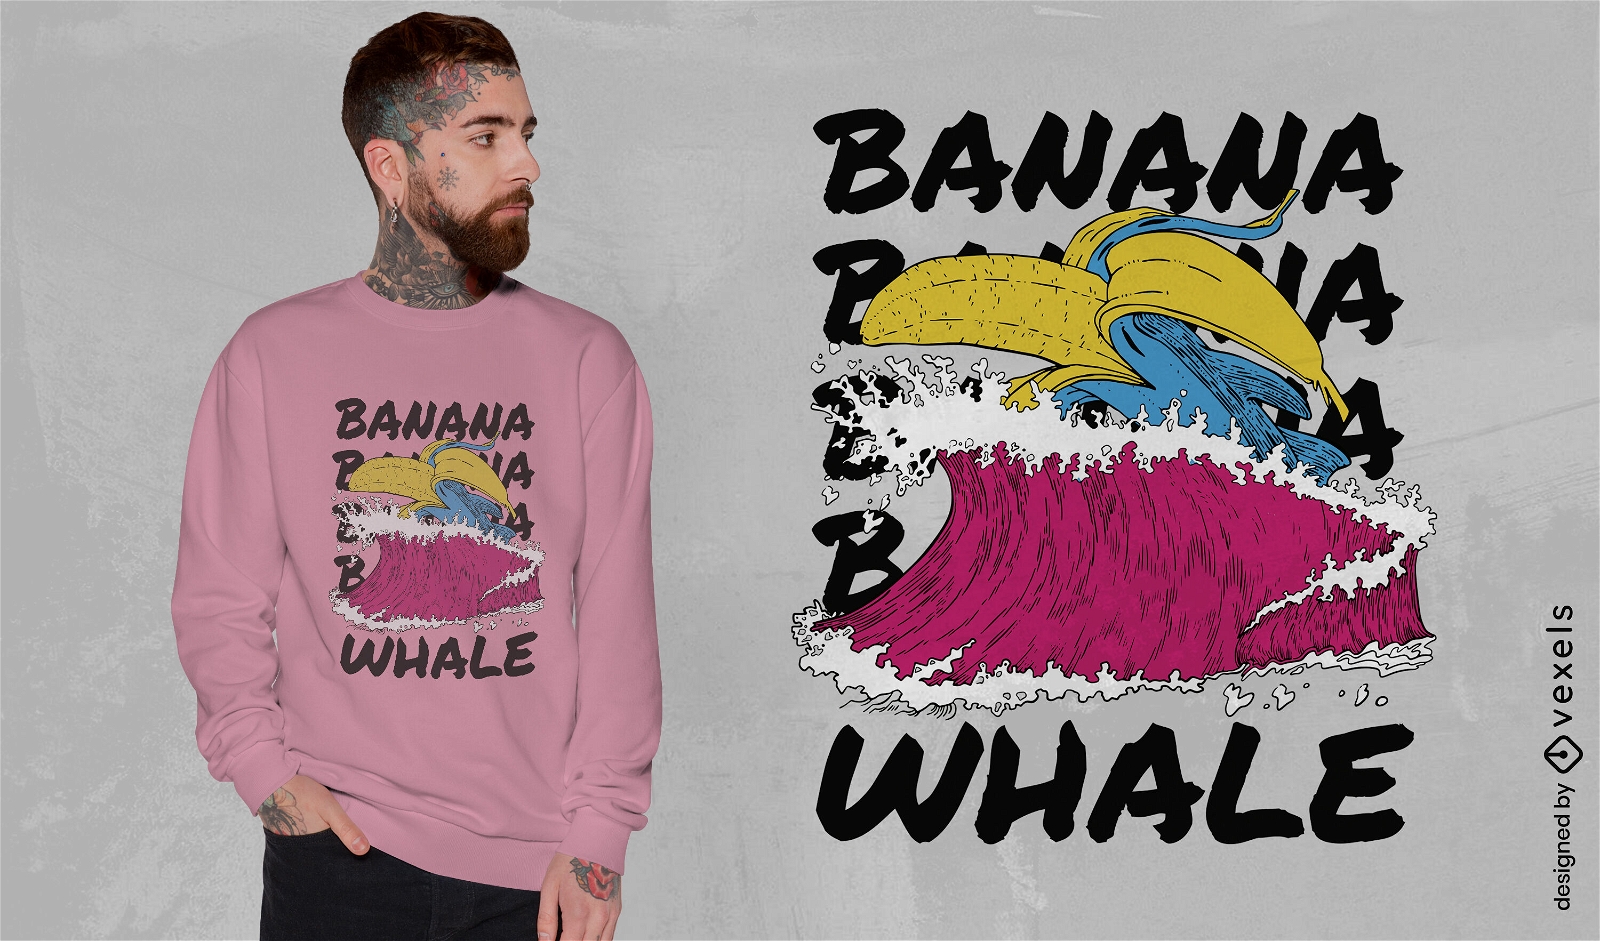 Dise?o de camiseta de surf de ballenas banana.